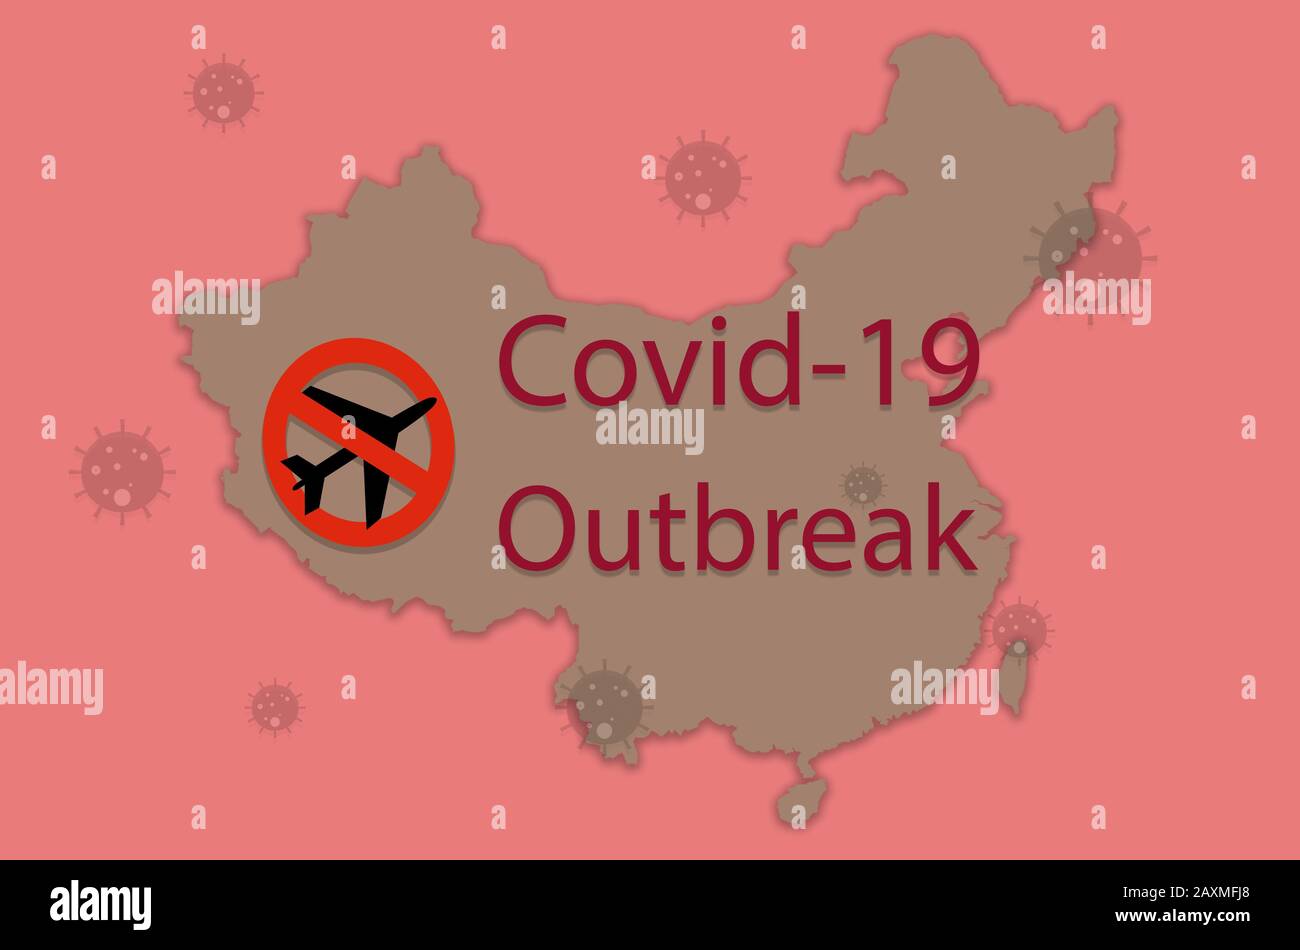 Konzept des Reiseverbots von Wuhan china aufgrund von Coronavirus, 2019-nCoV oder Covid-19 weltweit verbreitet - Epidemiezone - Gesundheits- und Medizinkonzept Stockfoto